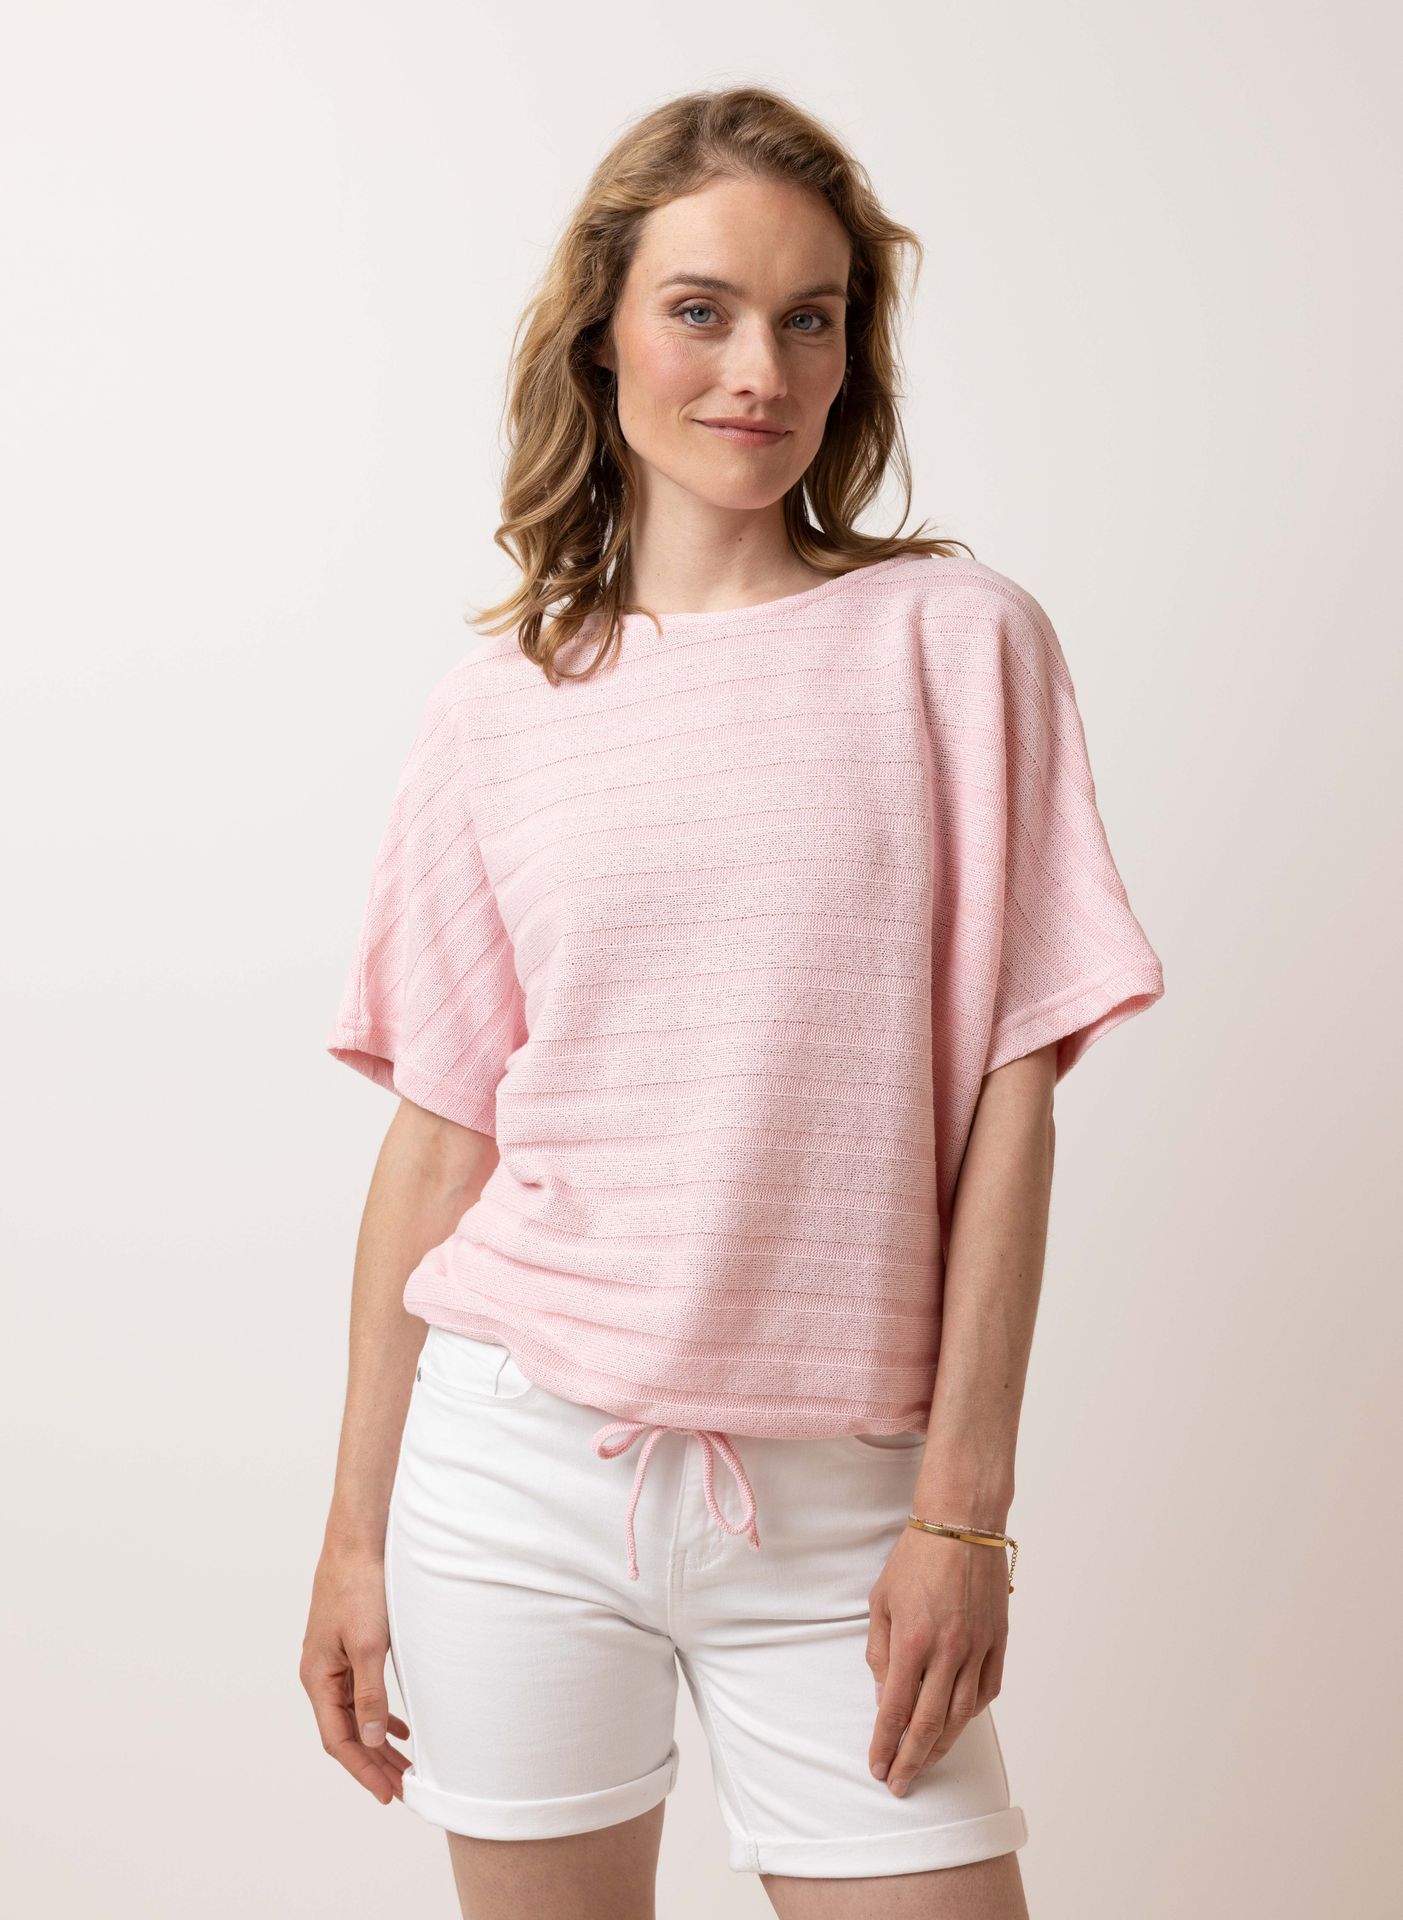 Norah Roze fijngebreid shirt pink 215058-900